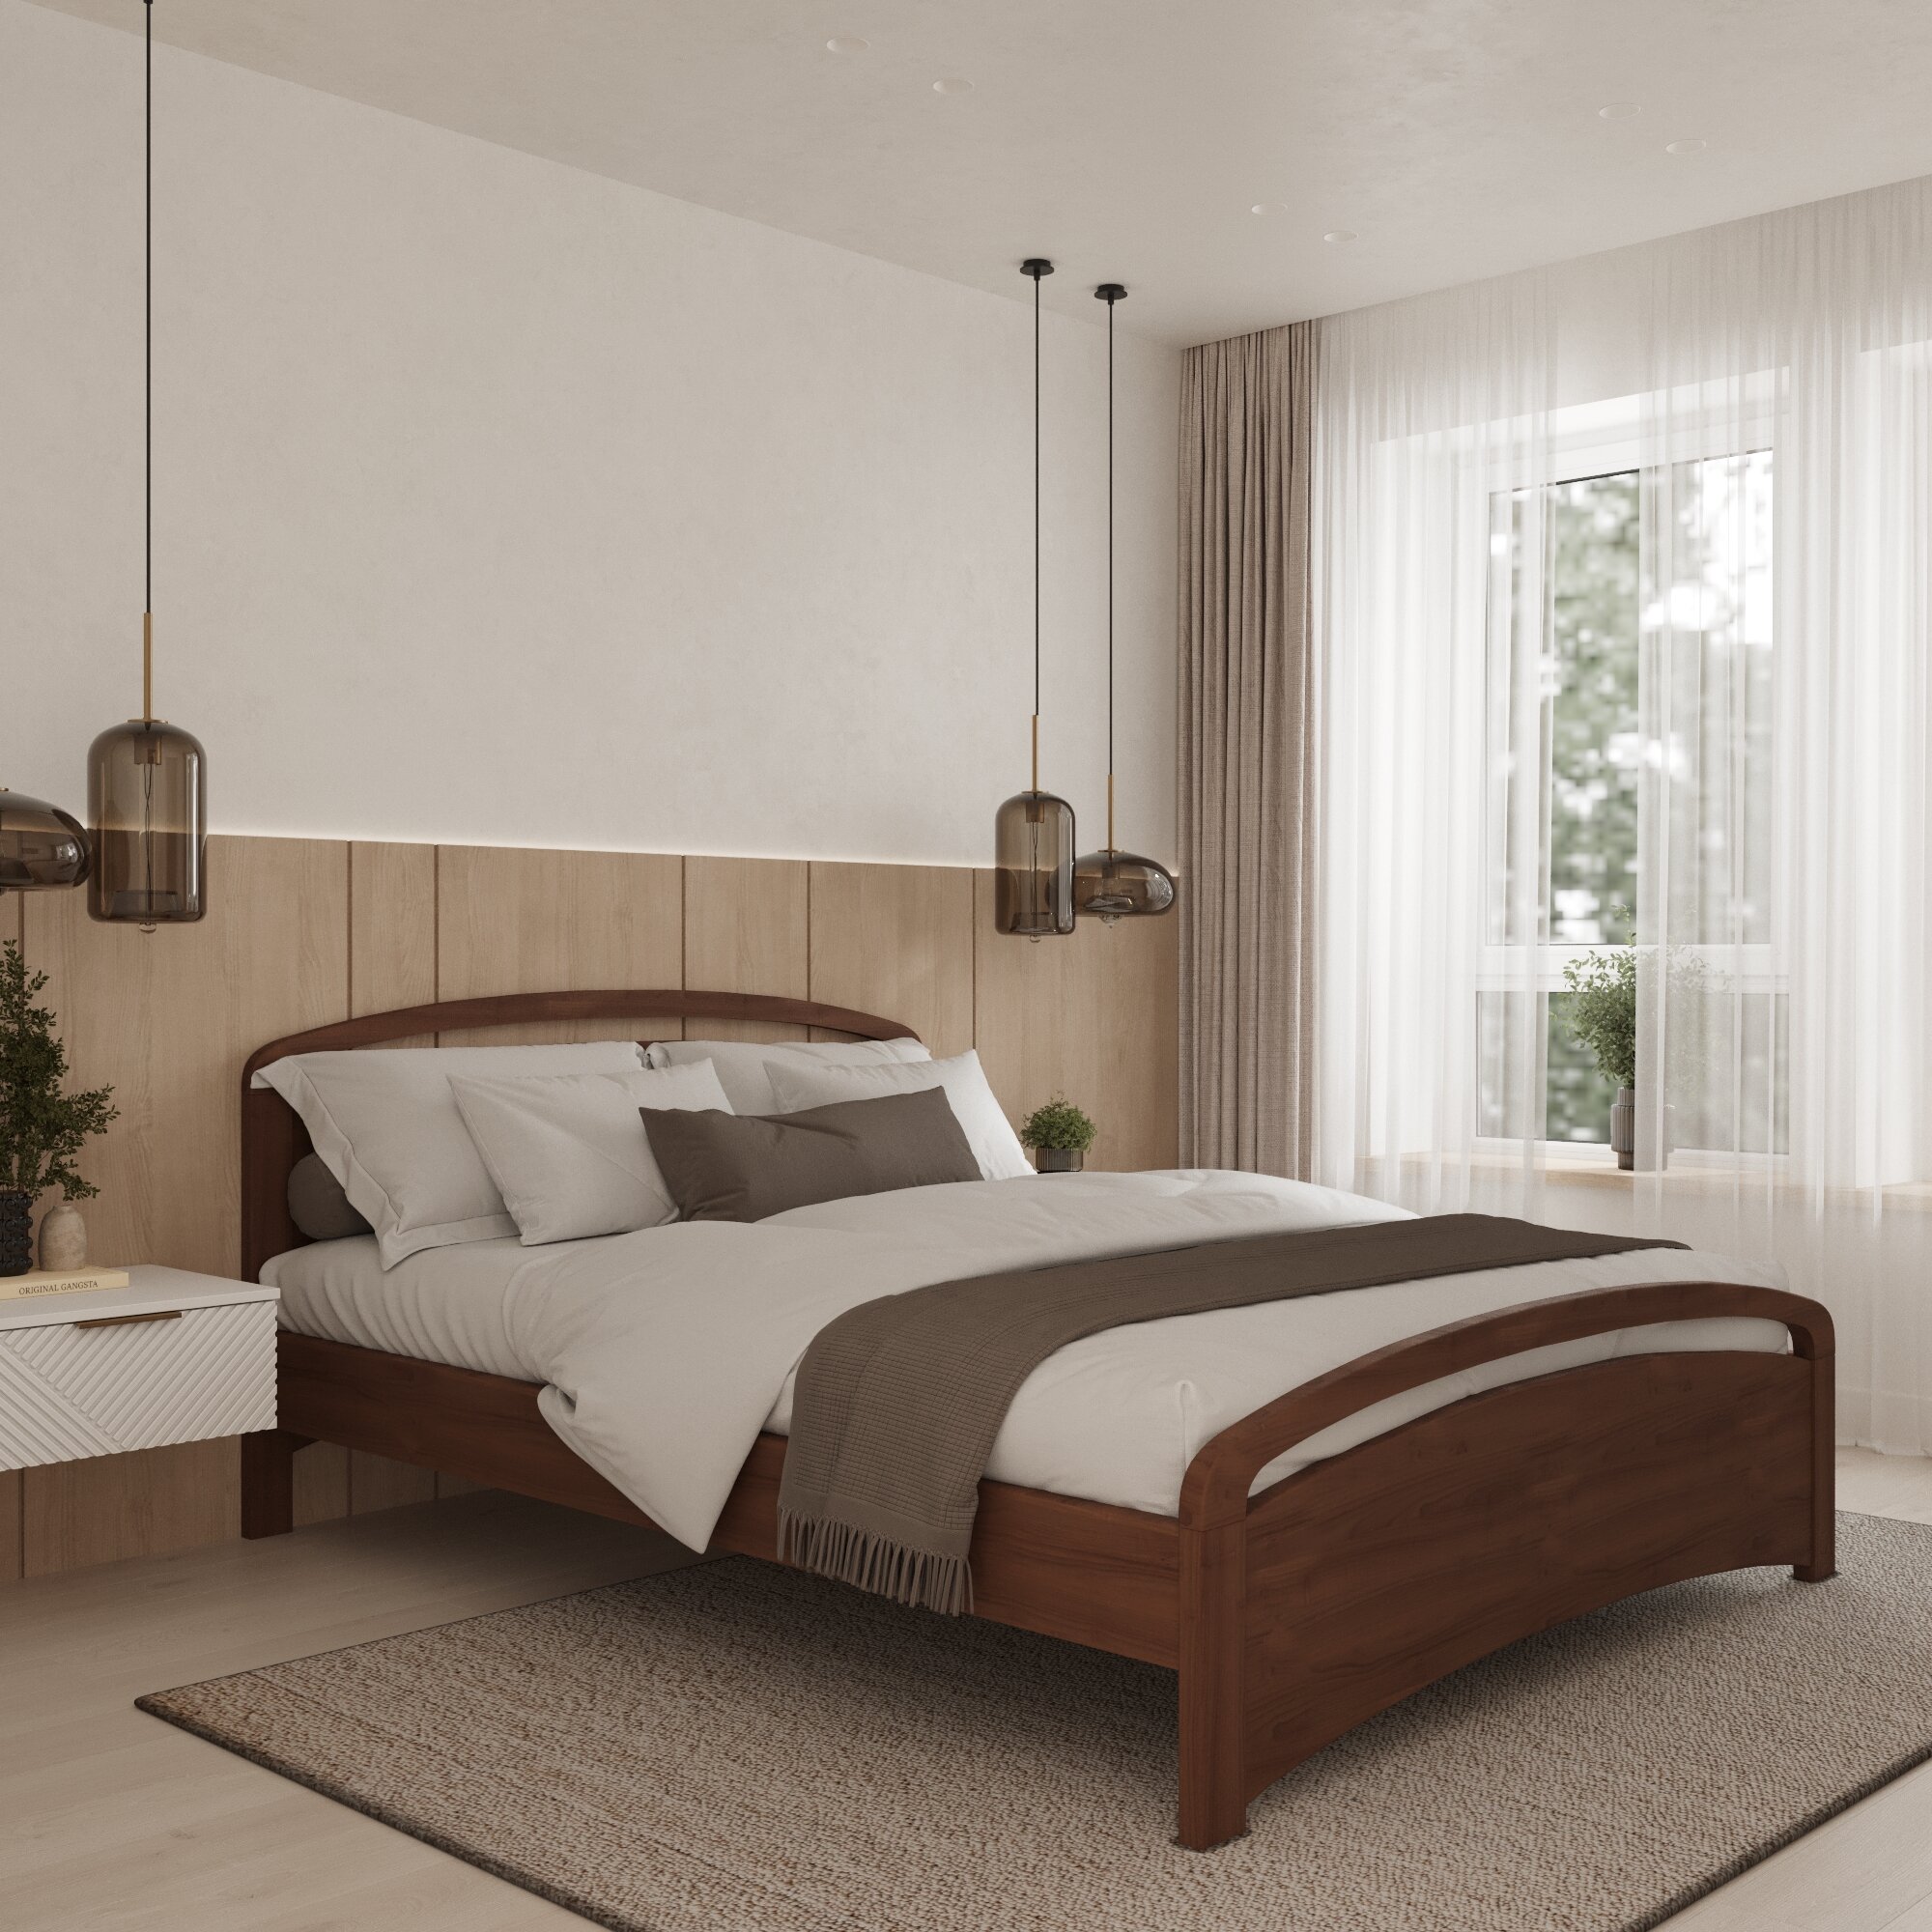 Двуспальная кровать Кровать деревянная Бали Люкс 160*200, 160х200 см, ММК-Древ